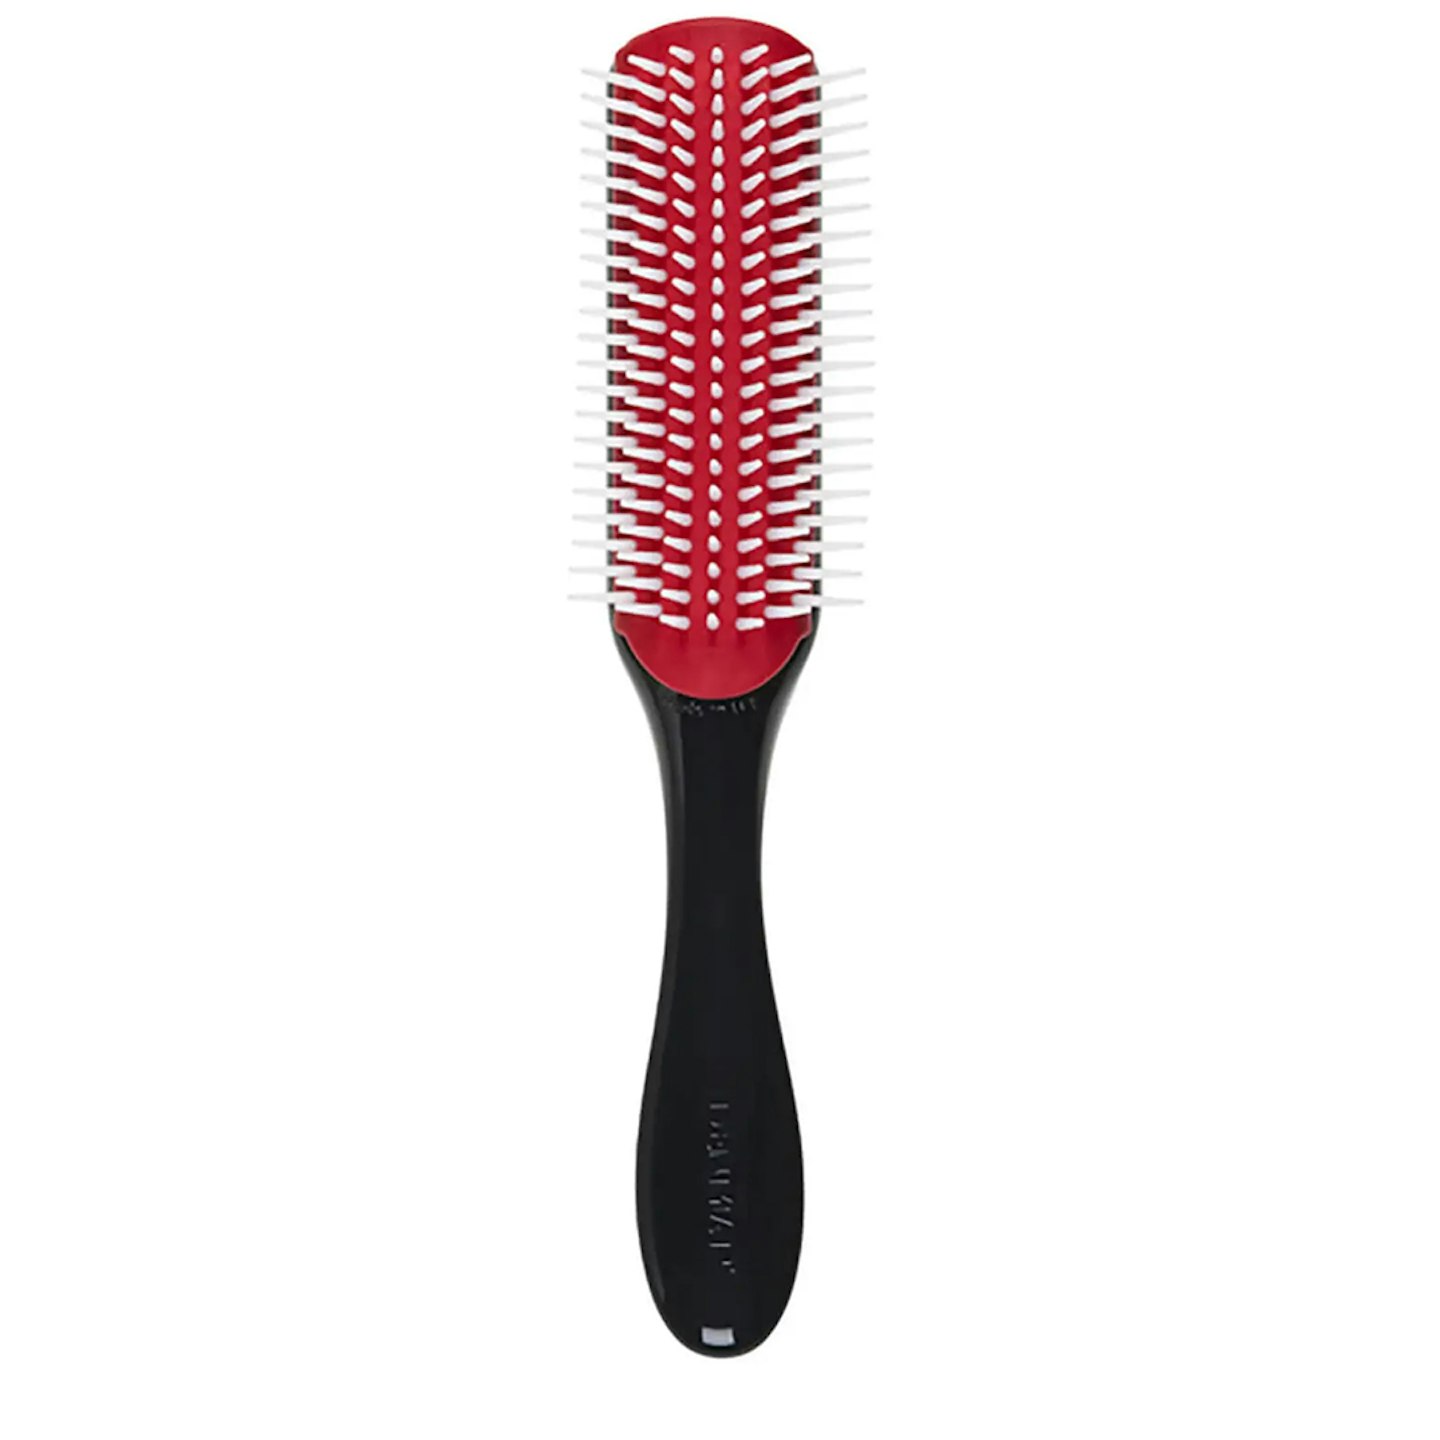 Best hair brushes - Denman D3 Medium Classic Styling Brush best hair brushes